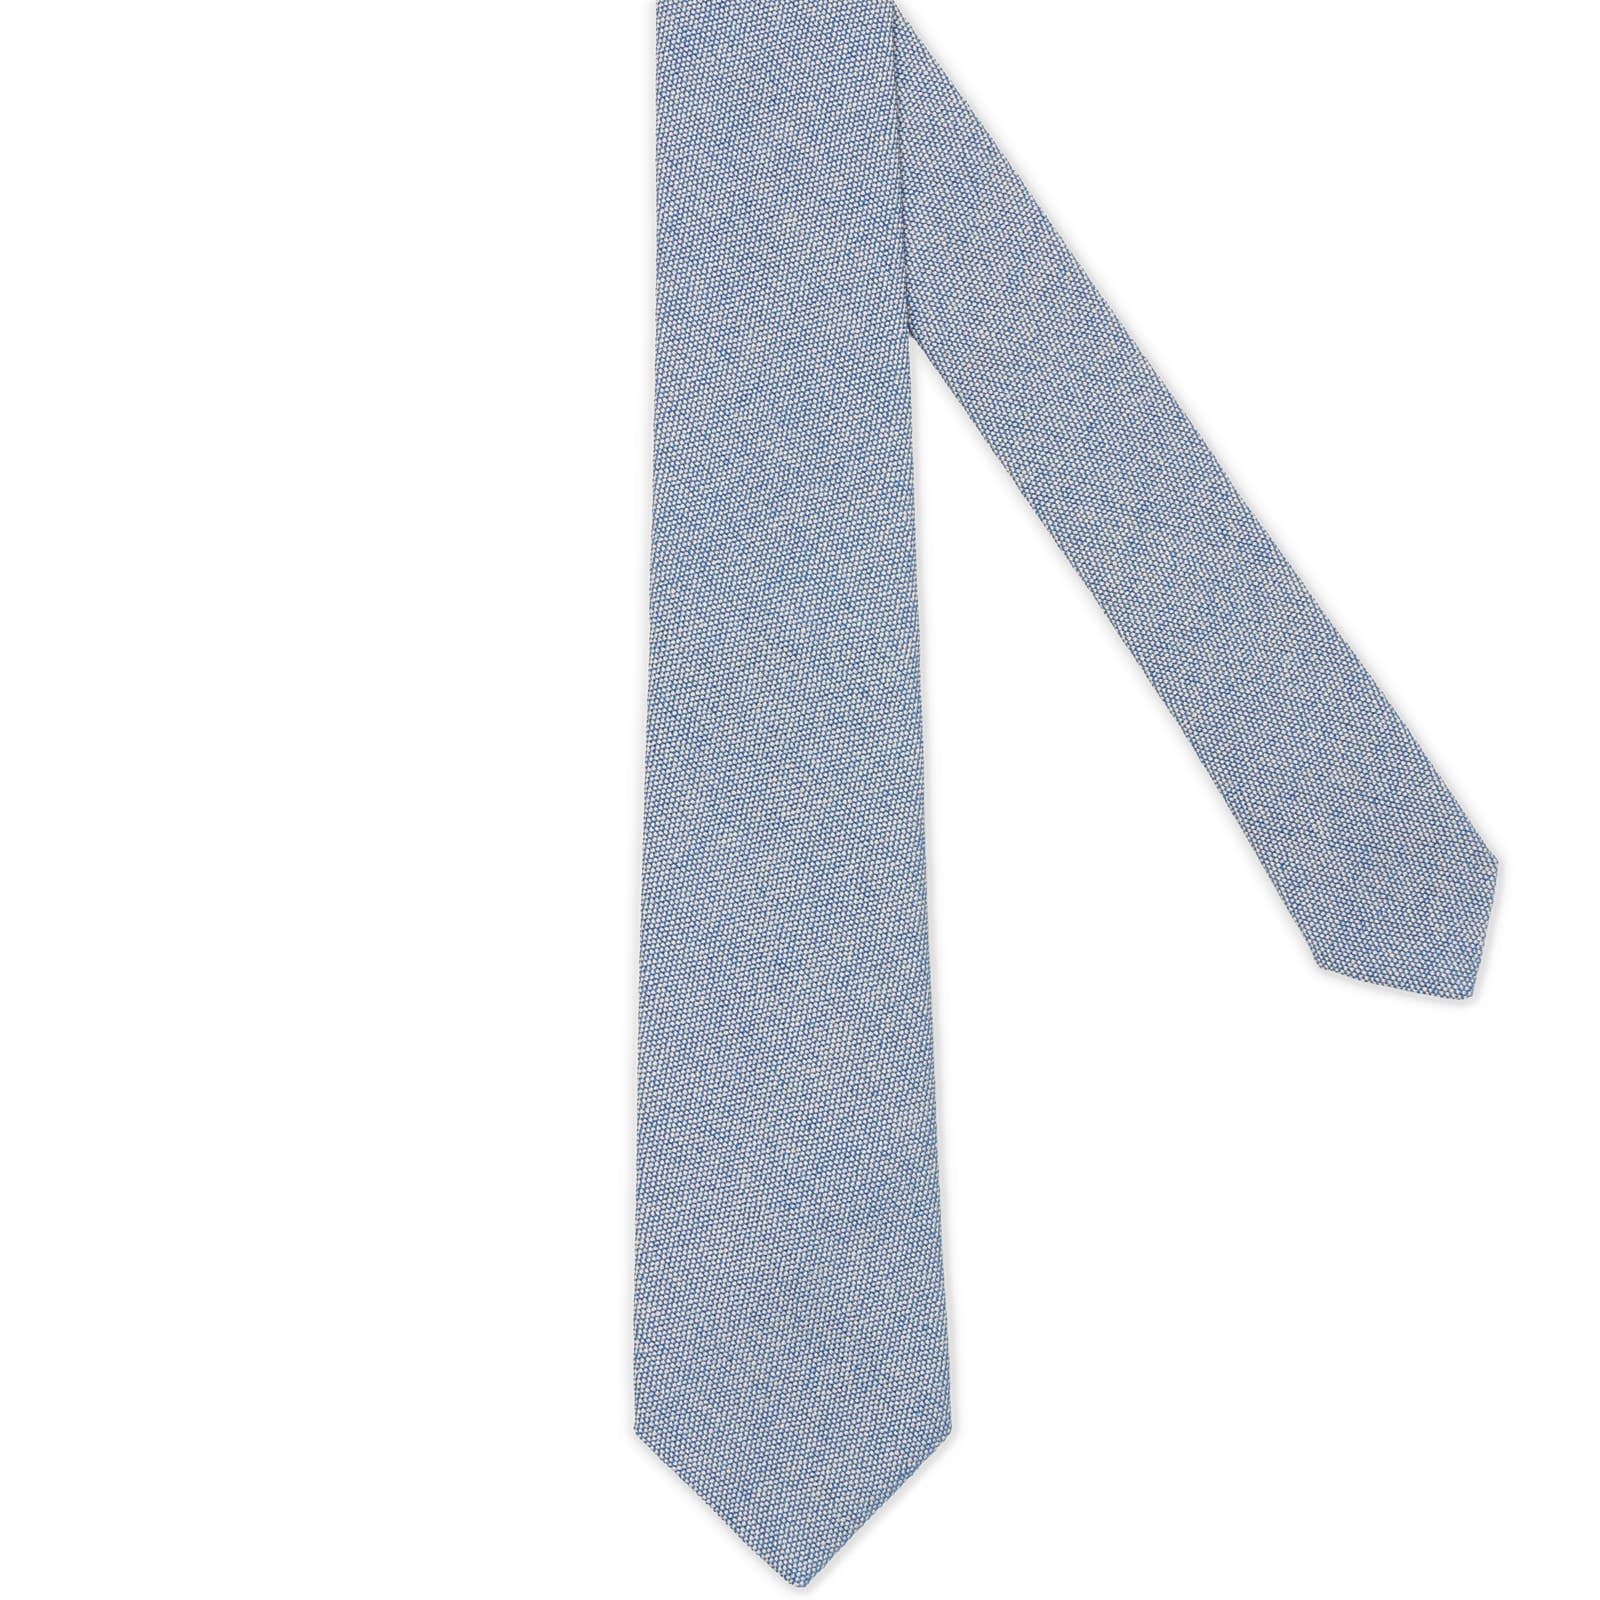 MATTABISCH FOR VANNUCCI Blue Birdseye Silk Tie NEW